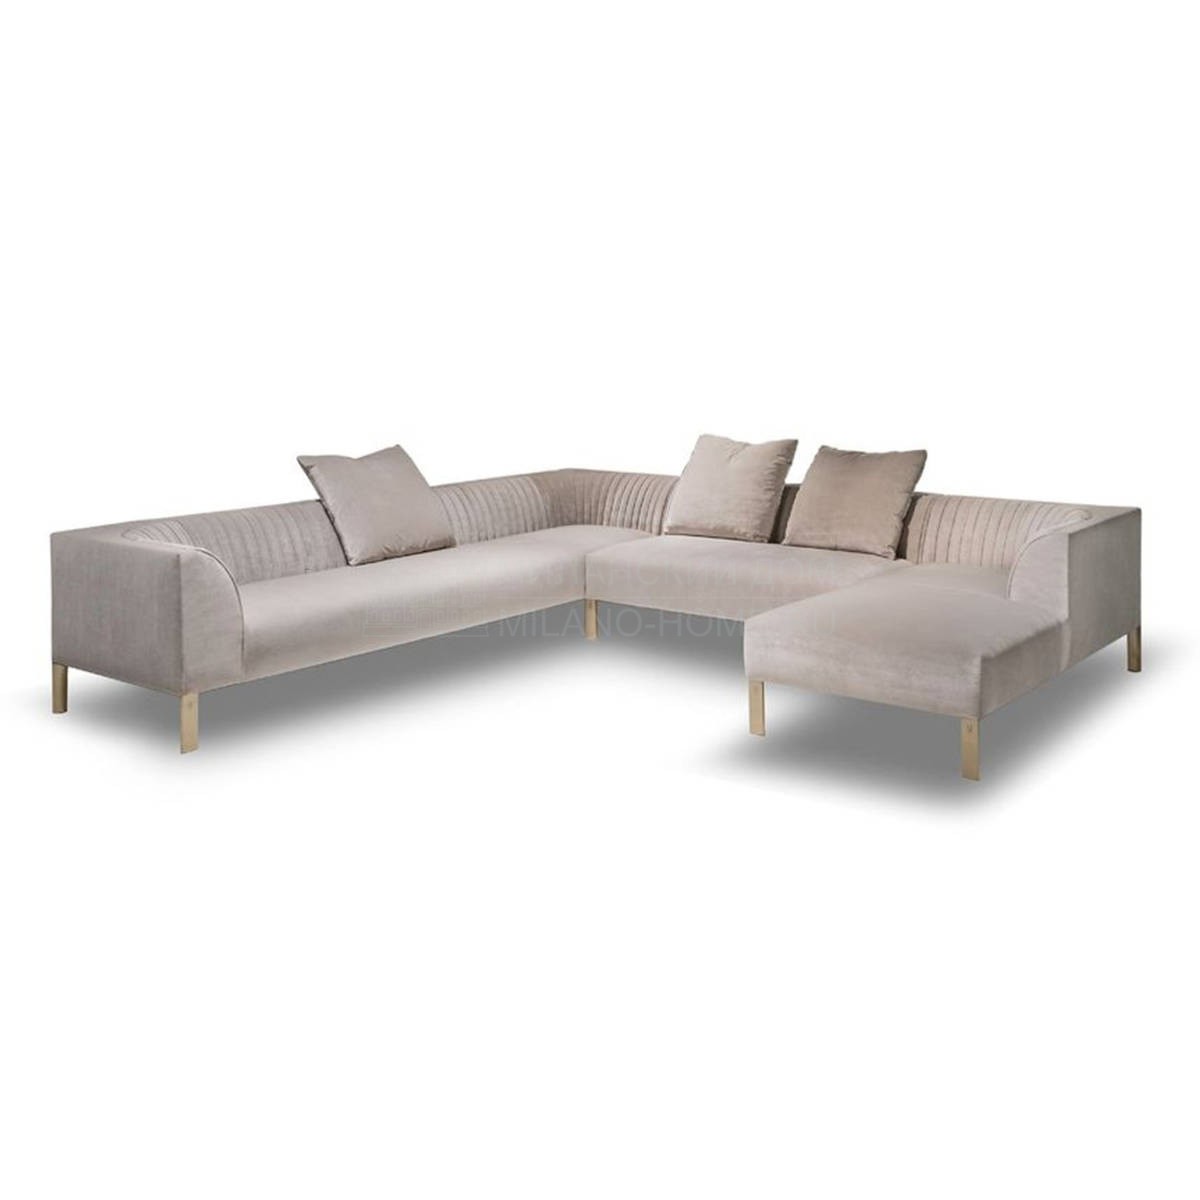 Угловой диван Capitol corner sofa из Италии фабрики IPE CAVALLI VISIONNAIRE